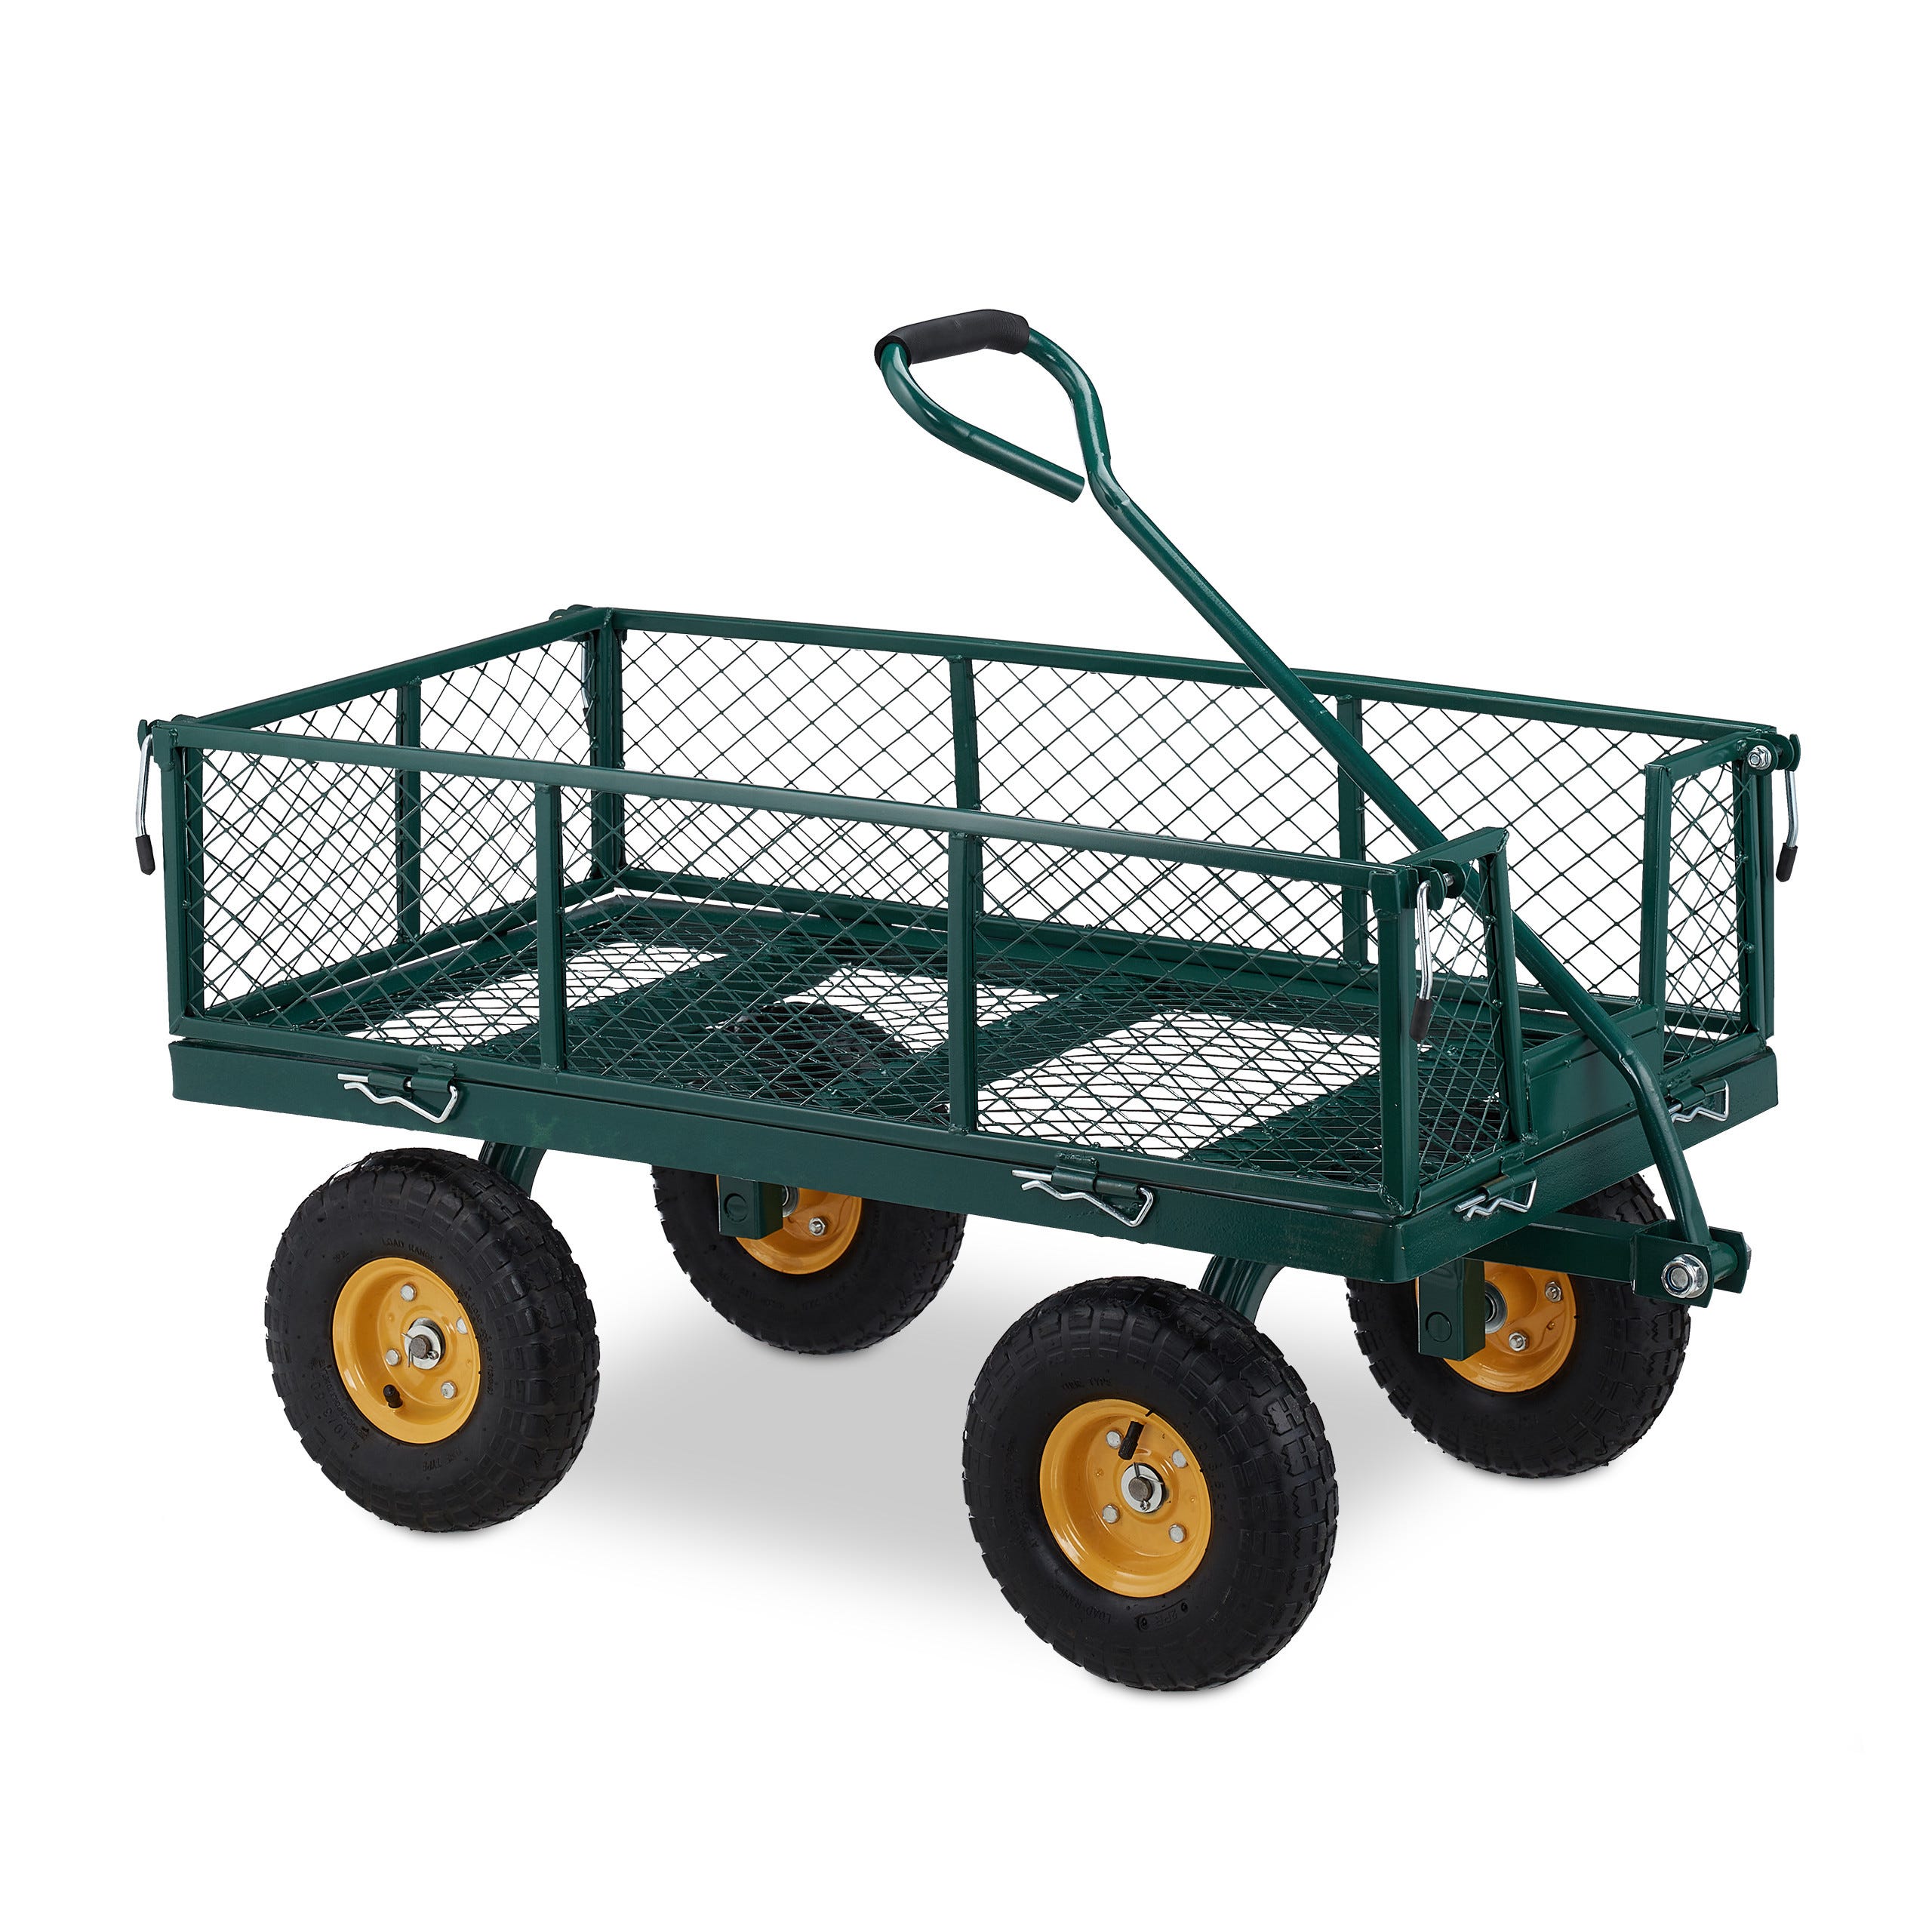 Relaxdays Chariot de transport, sur roues pneumatiques, côtés rabattables,  pour jardin, capacité de 250 kg, vert